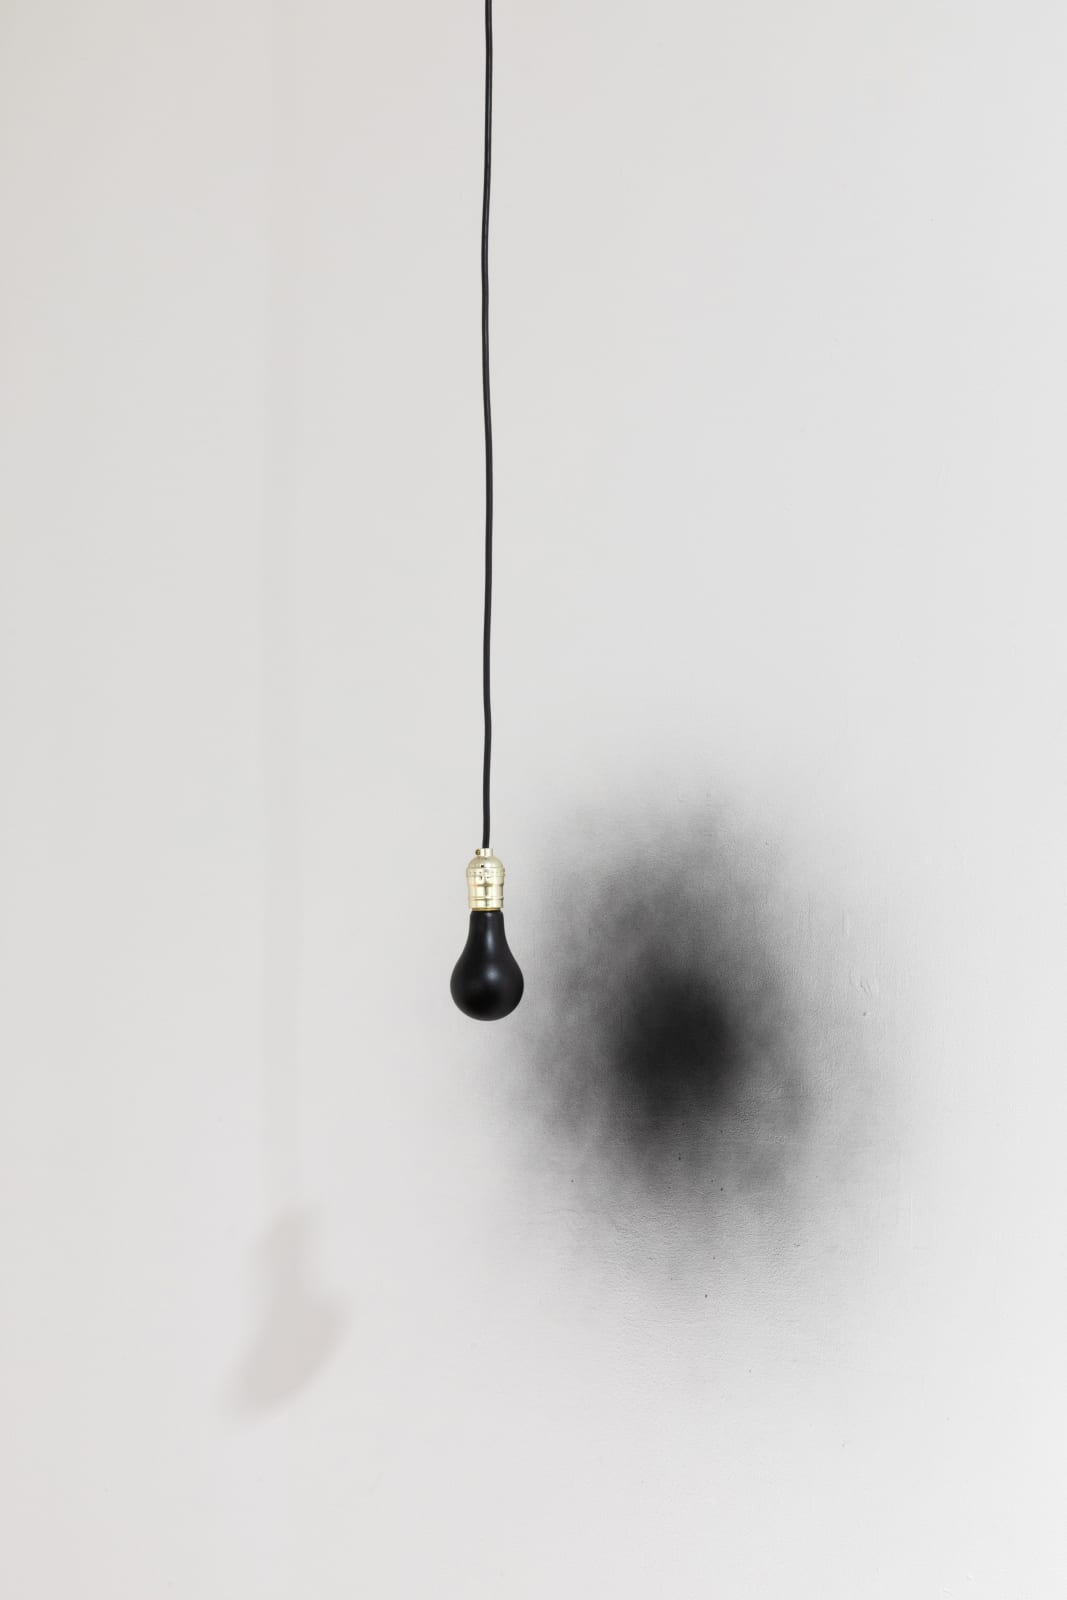 Ben Hagari, Invert (bulb and socket), 2011